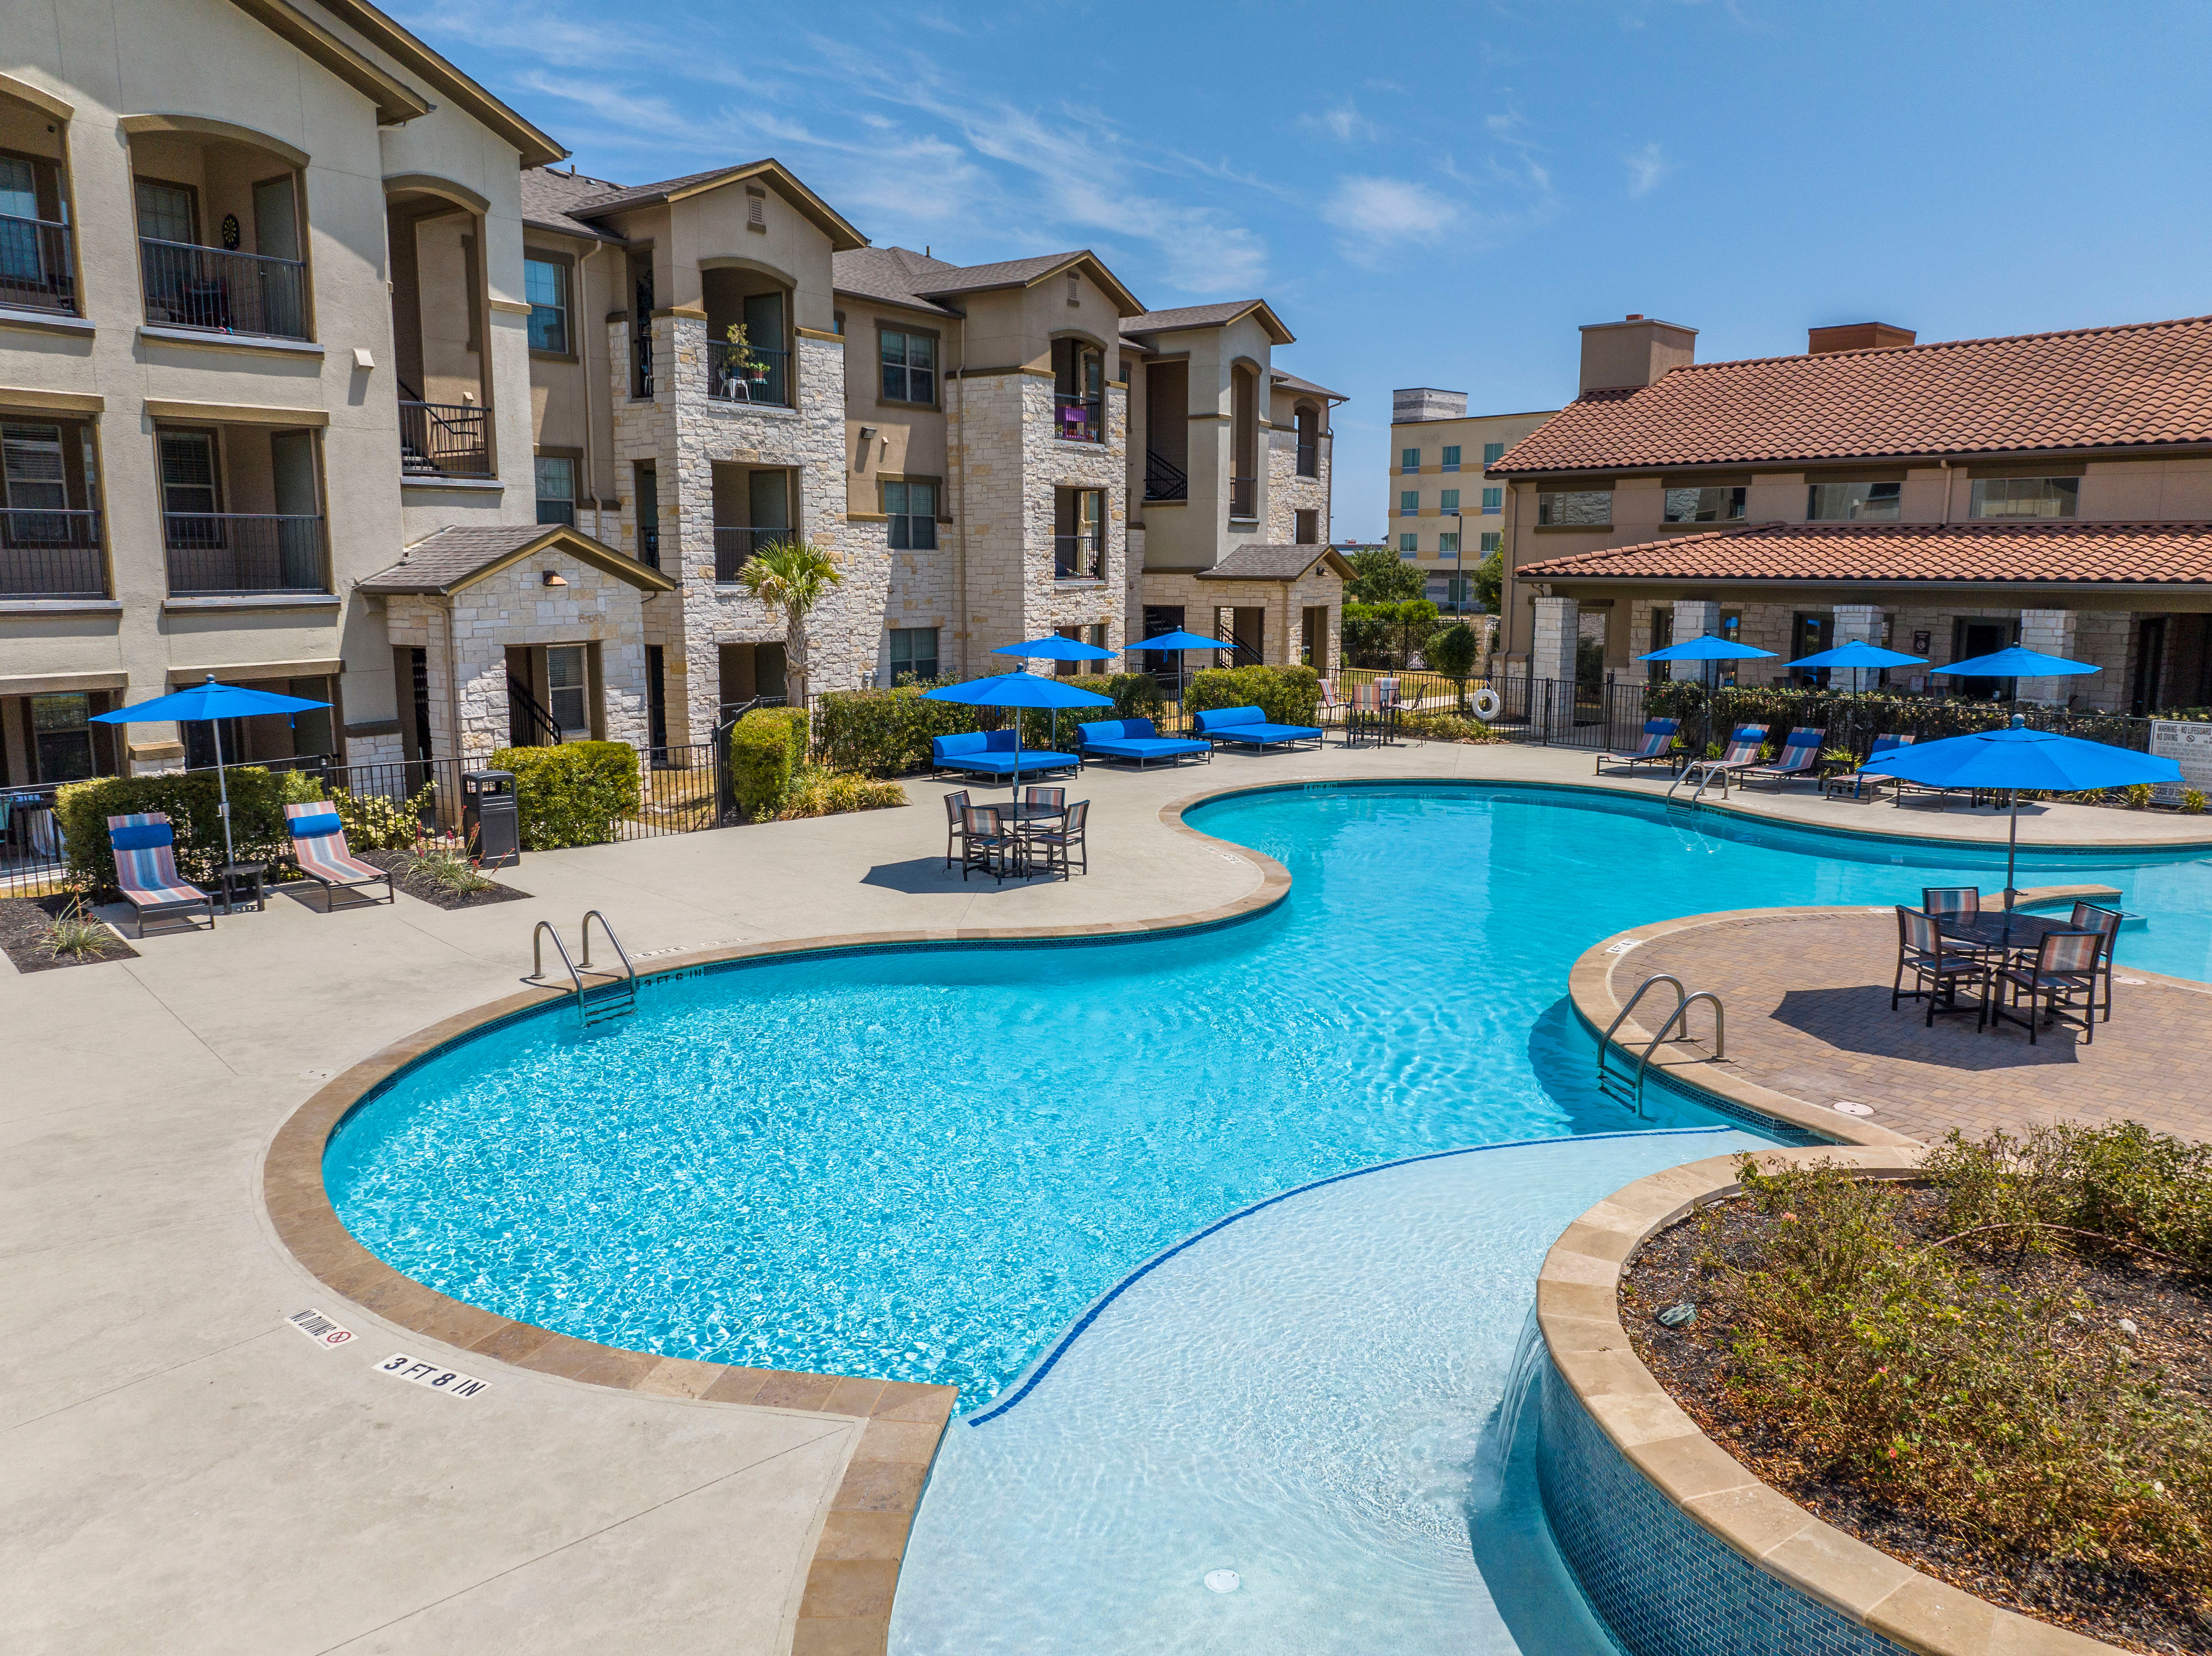 Large Pool area at Carrington Oaks in Buda, Texas